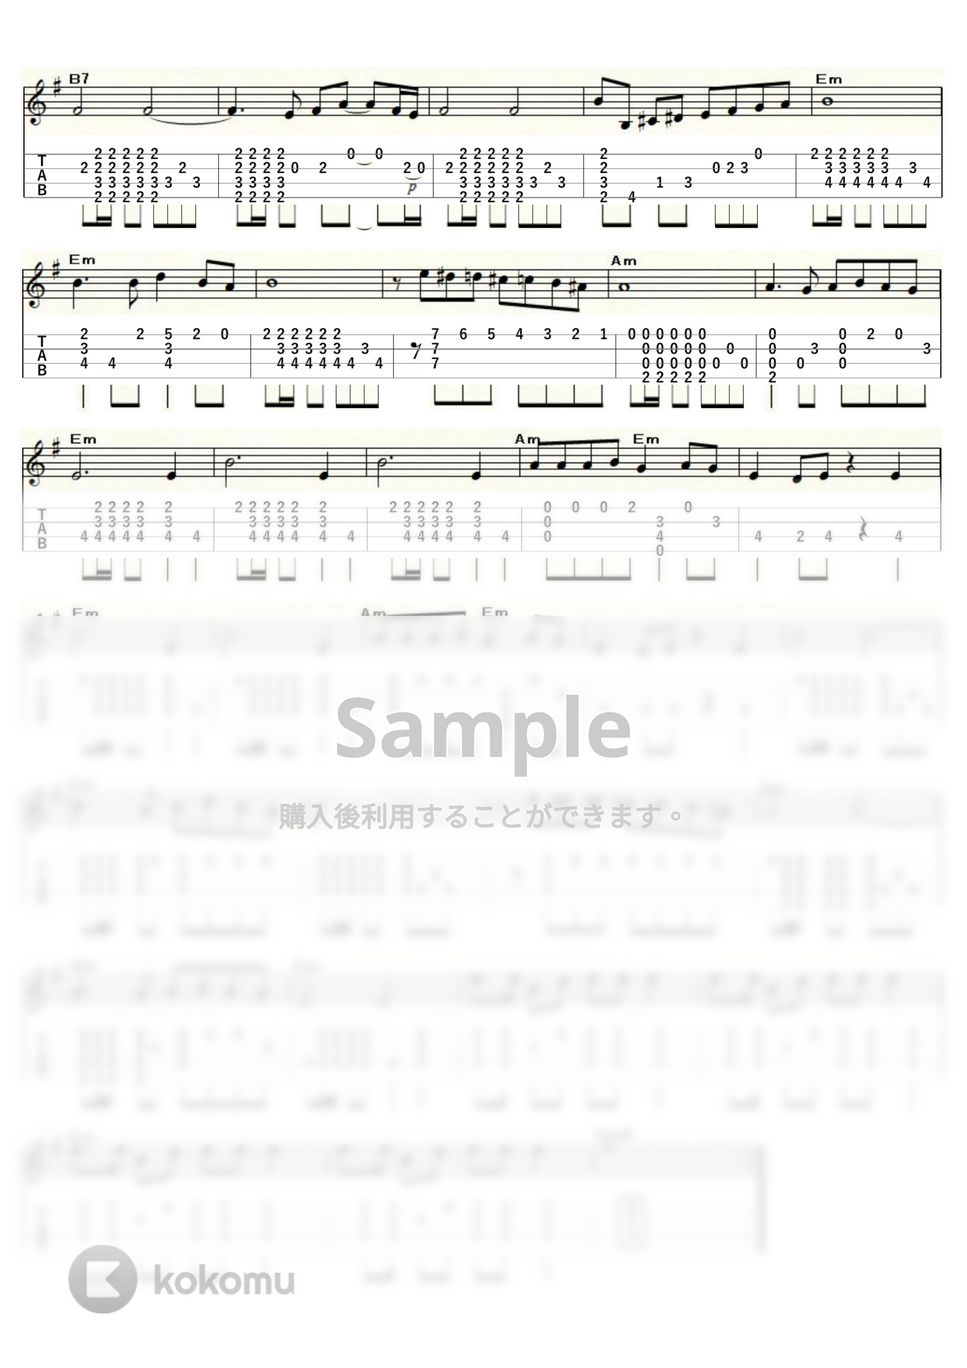 マルガリータ・レクオーナ - タブー (ｳｸﾚﾚｿﾛ/Low-G/中級) by ukulelepapa